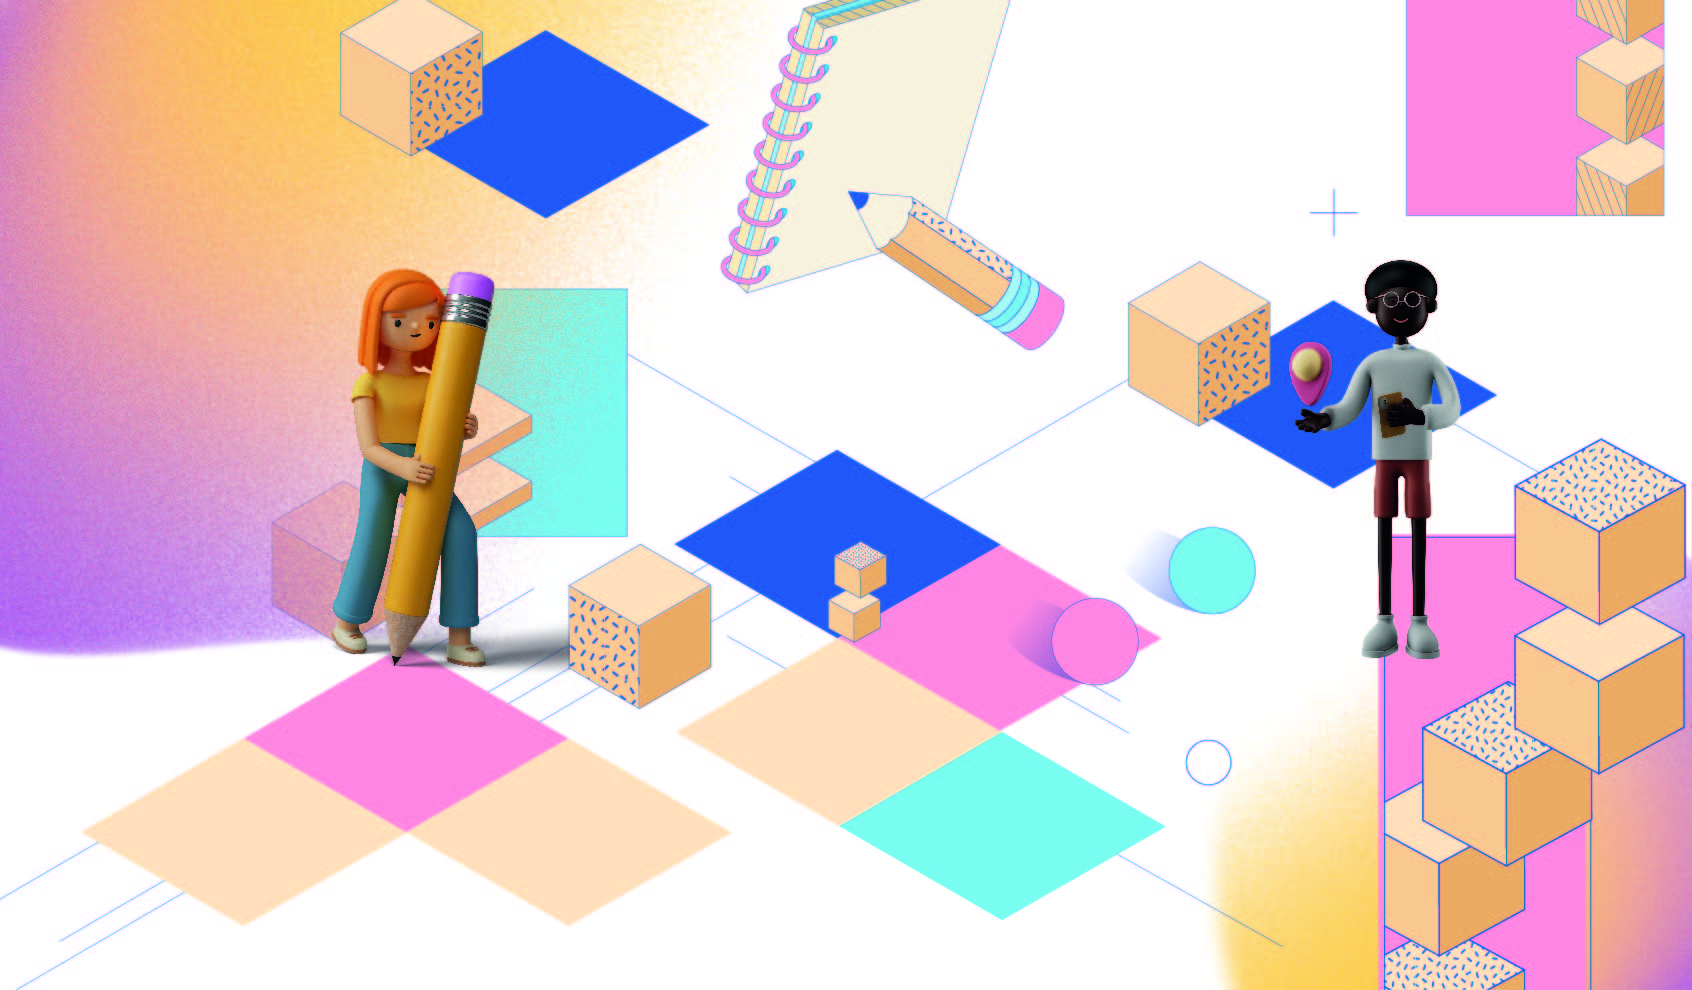 visuel du concours comportant carrés de couleurs et personnages en 3D tenant des crayons